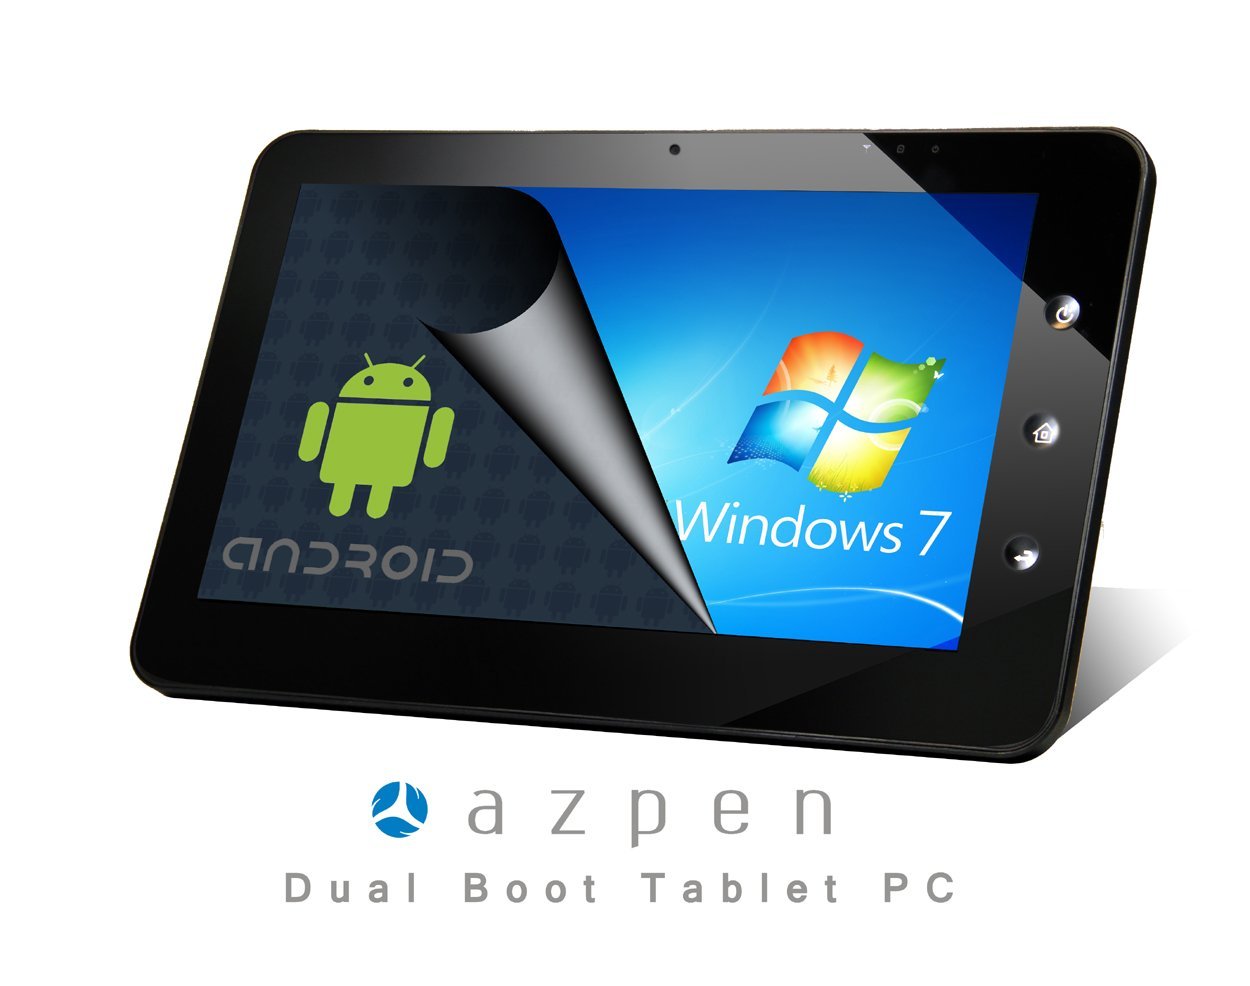 dimensioni dello sfondo del tablet da 7 pollici,tablet,aggeggio,tecnologia,prodotto,elettronica